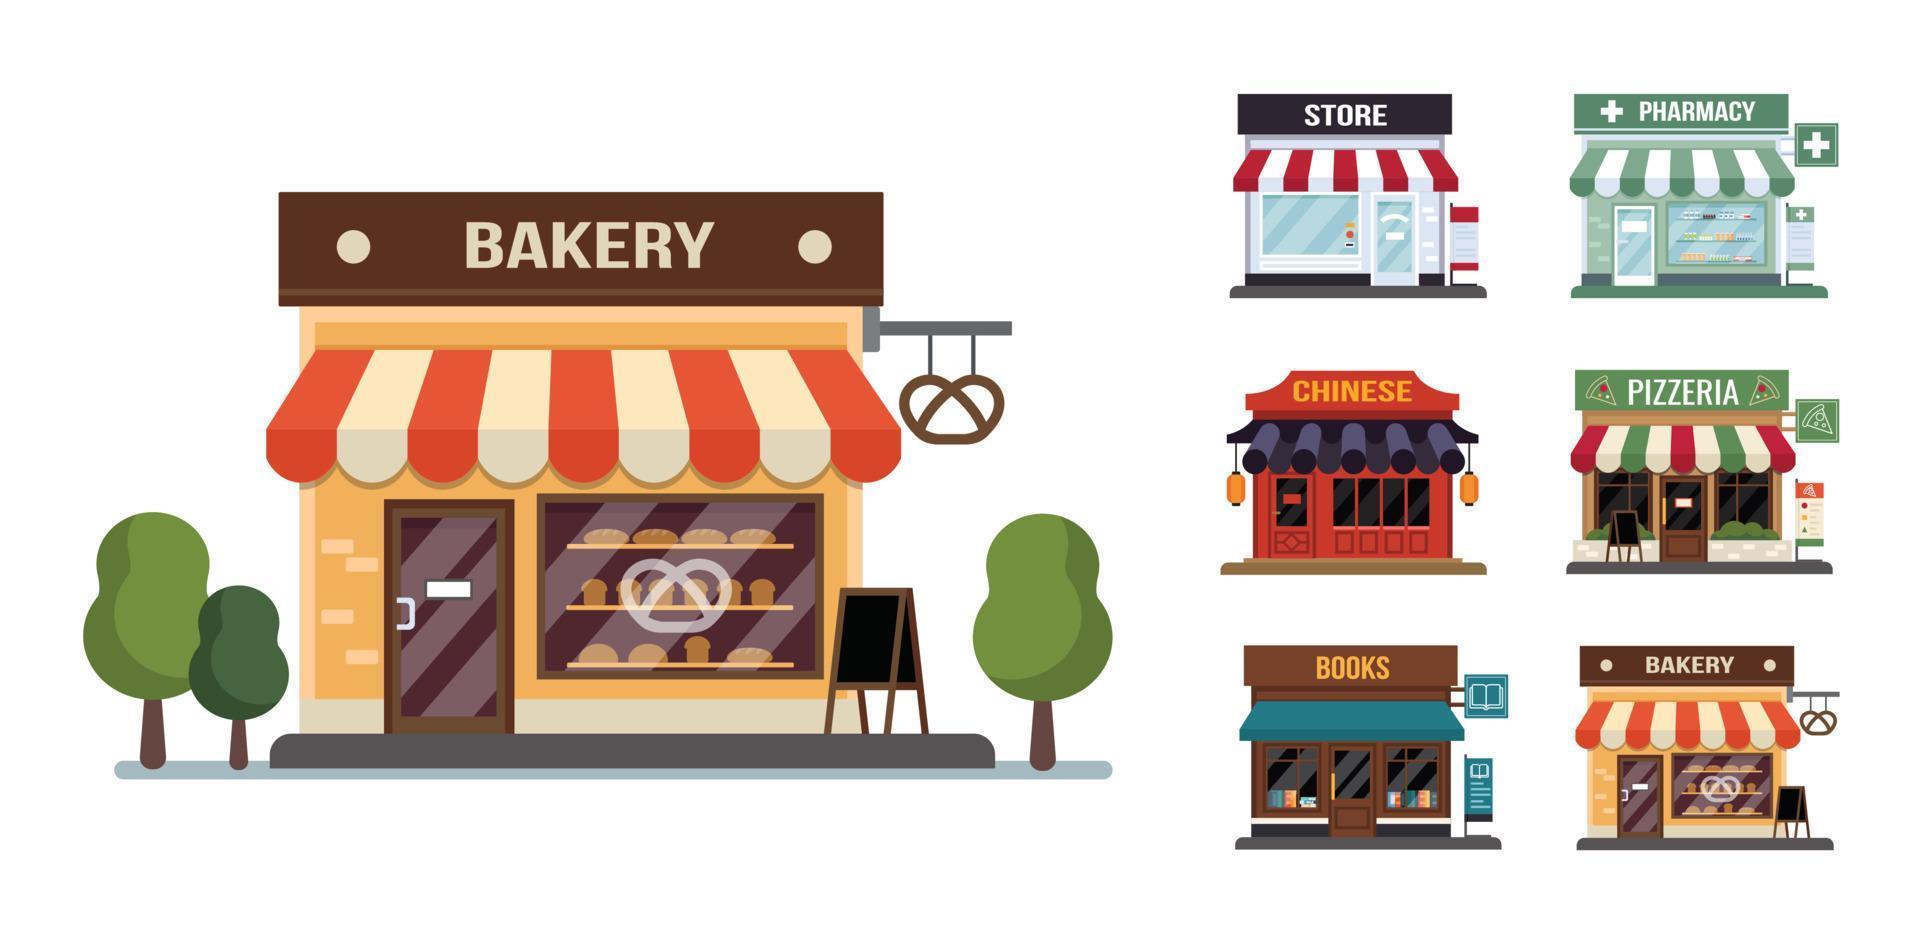 vlakke stijl winkel kleine kleine icon set. Chinees, bakkerij, pizza, apotheek, boeken, winkel. vector